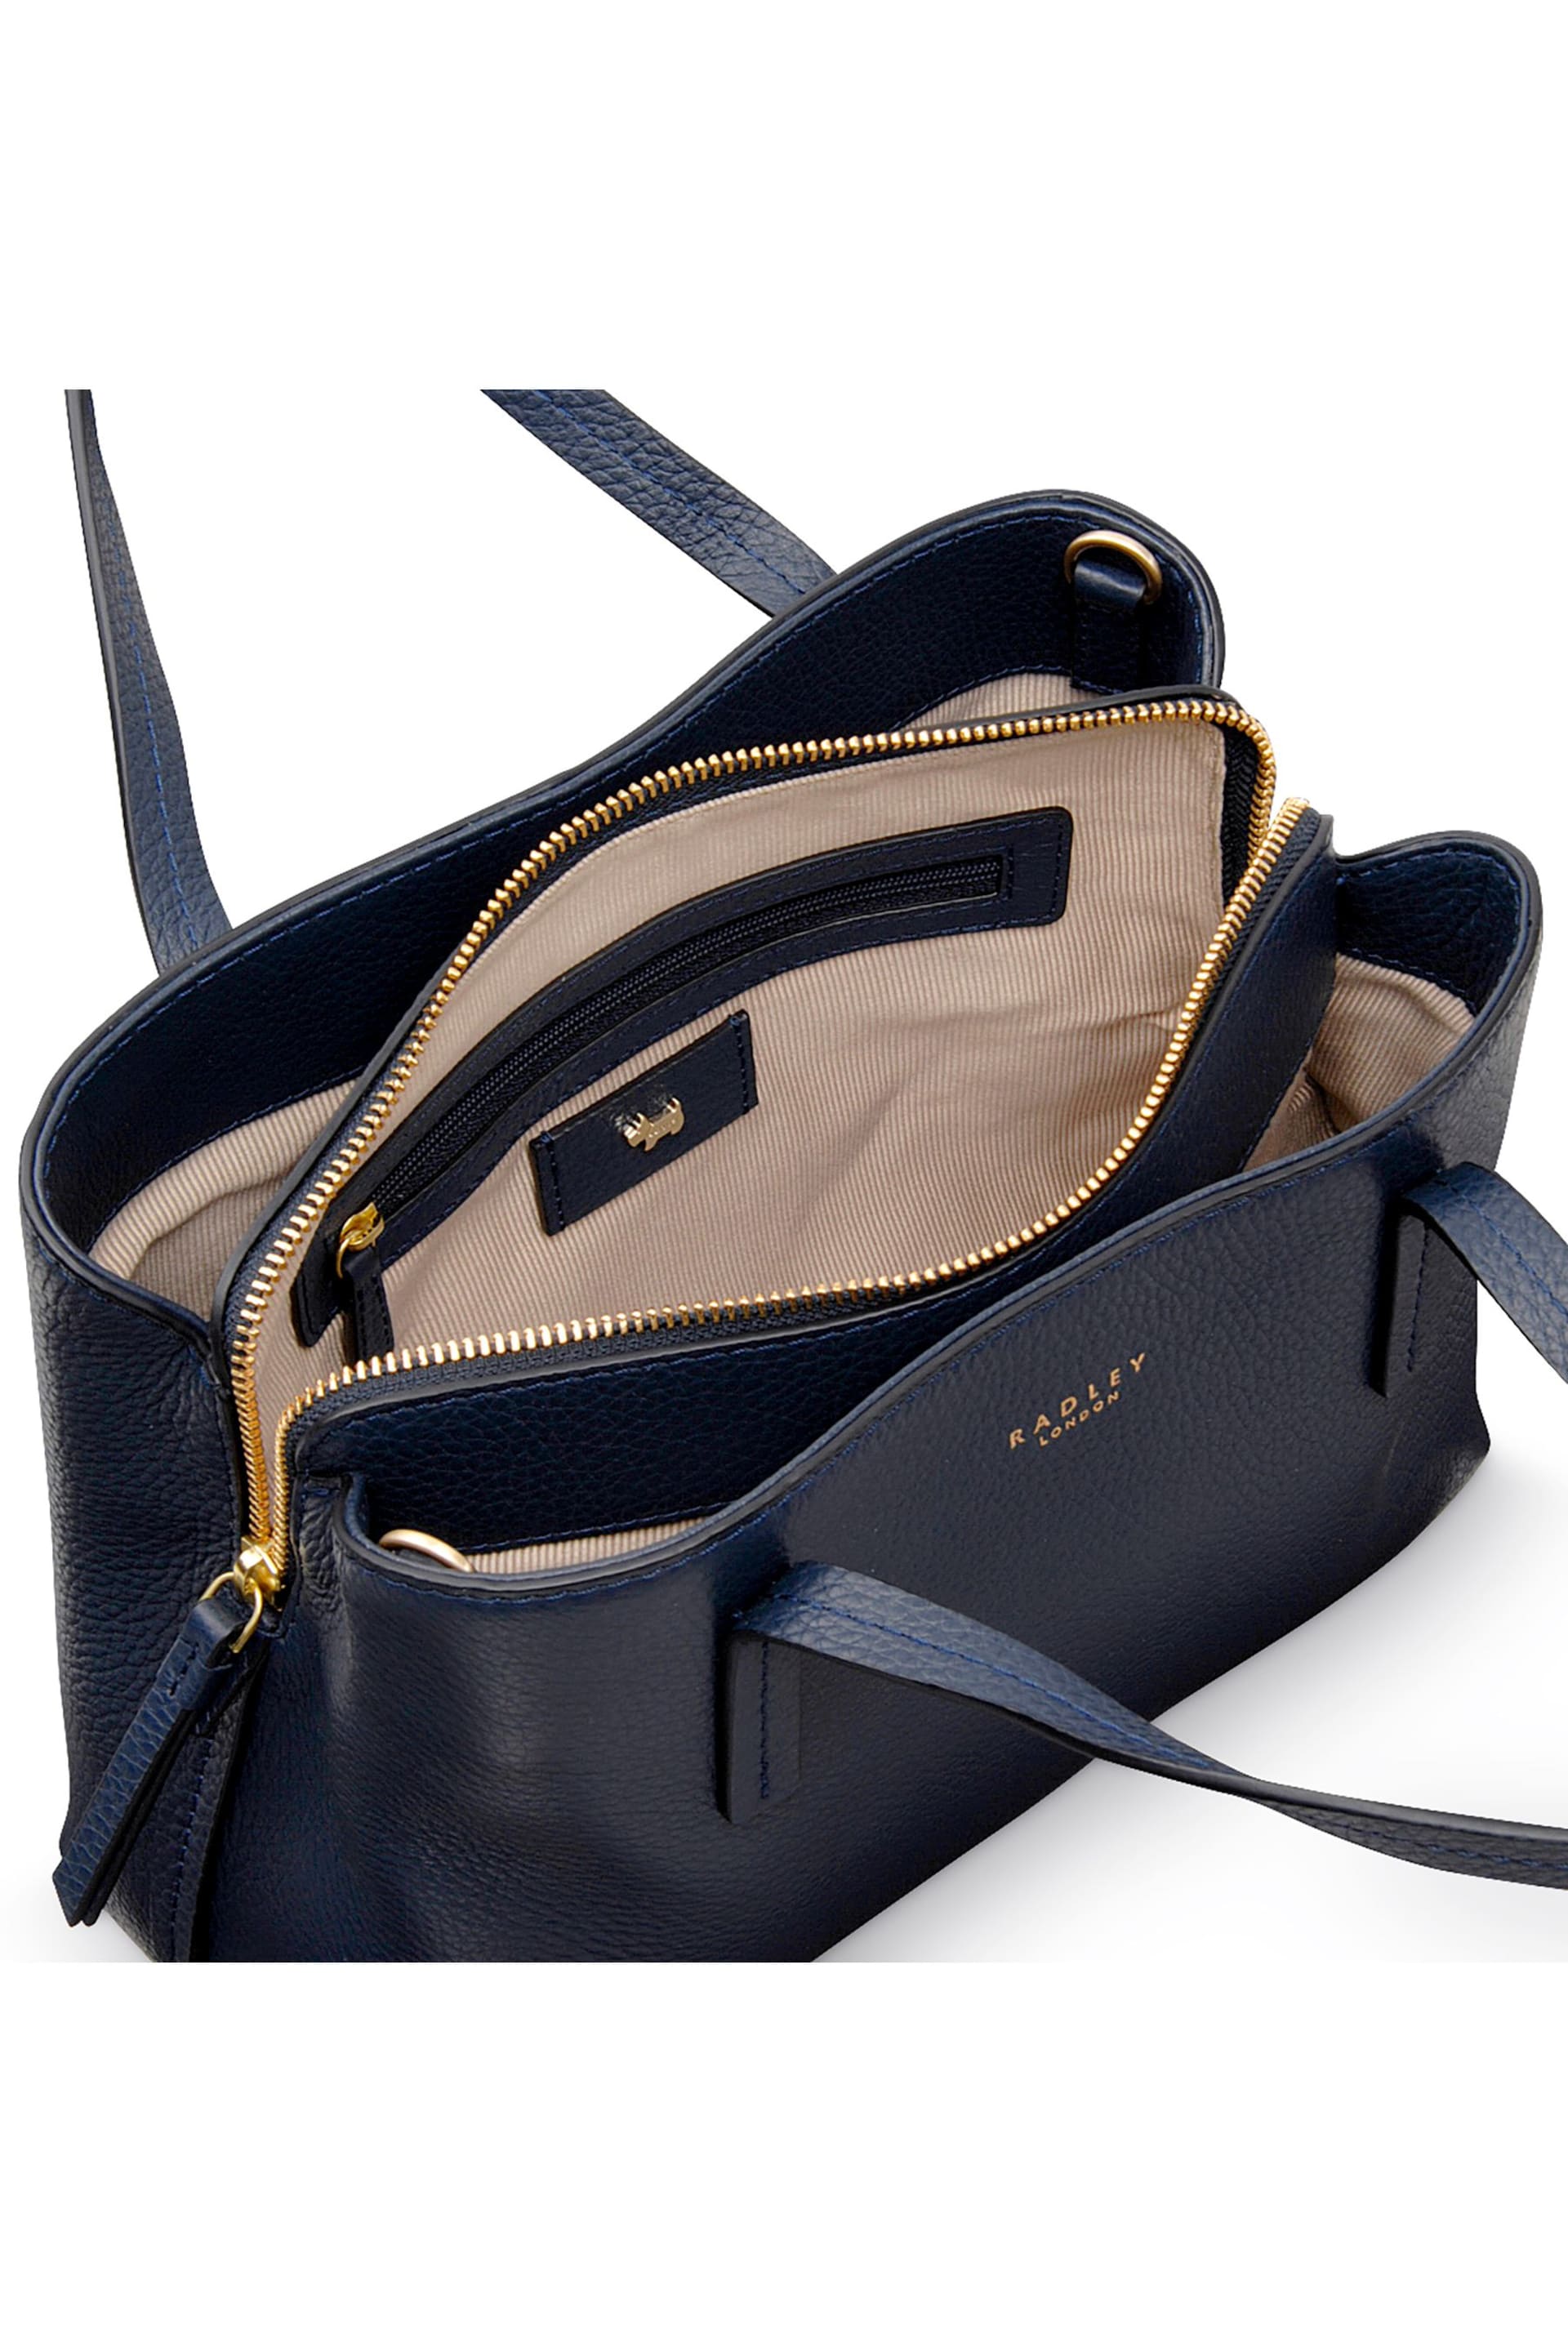 Radley London Medium Dukes Place Ziptop Grab Bag - Image 3 of 3